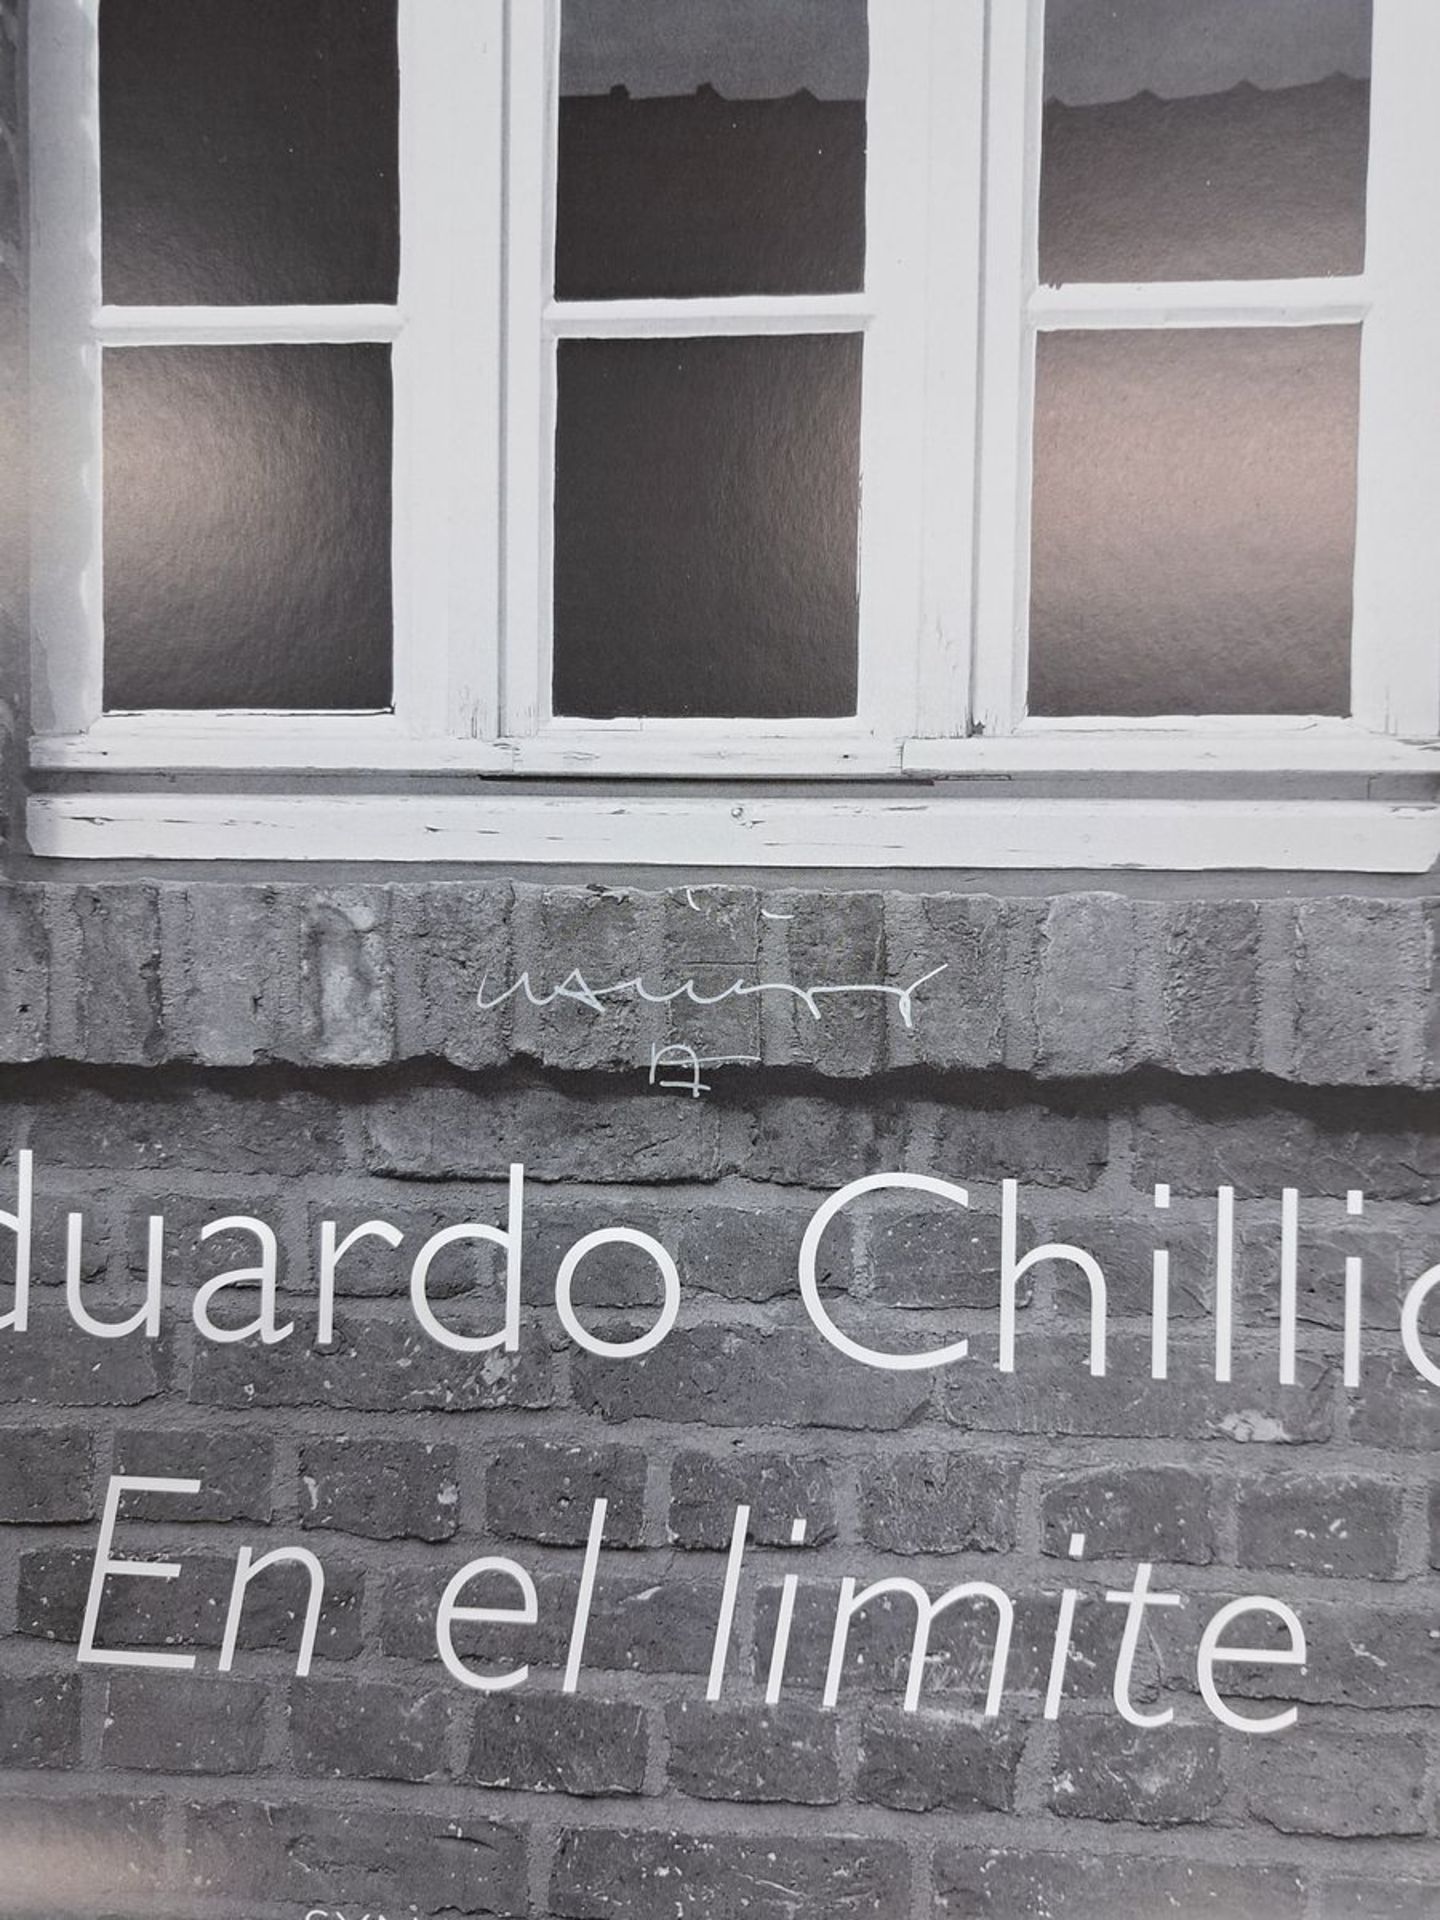 Eduardo Chilida, 1924-2002, Offetlithografie, handsign., - Bild 2 aus 2